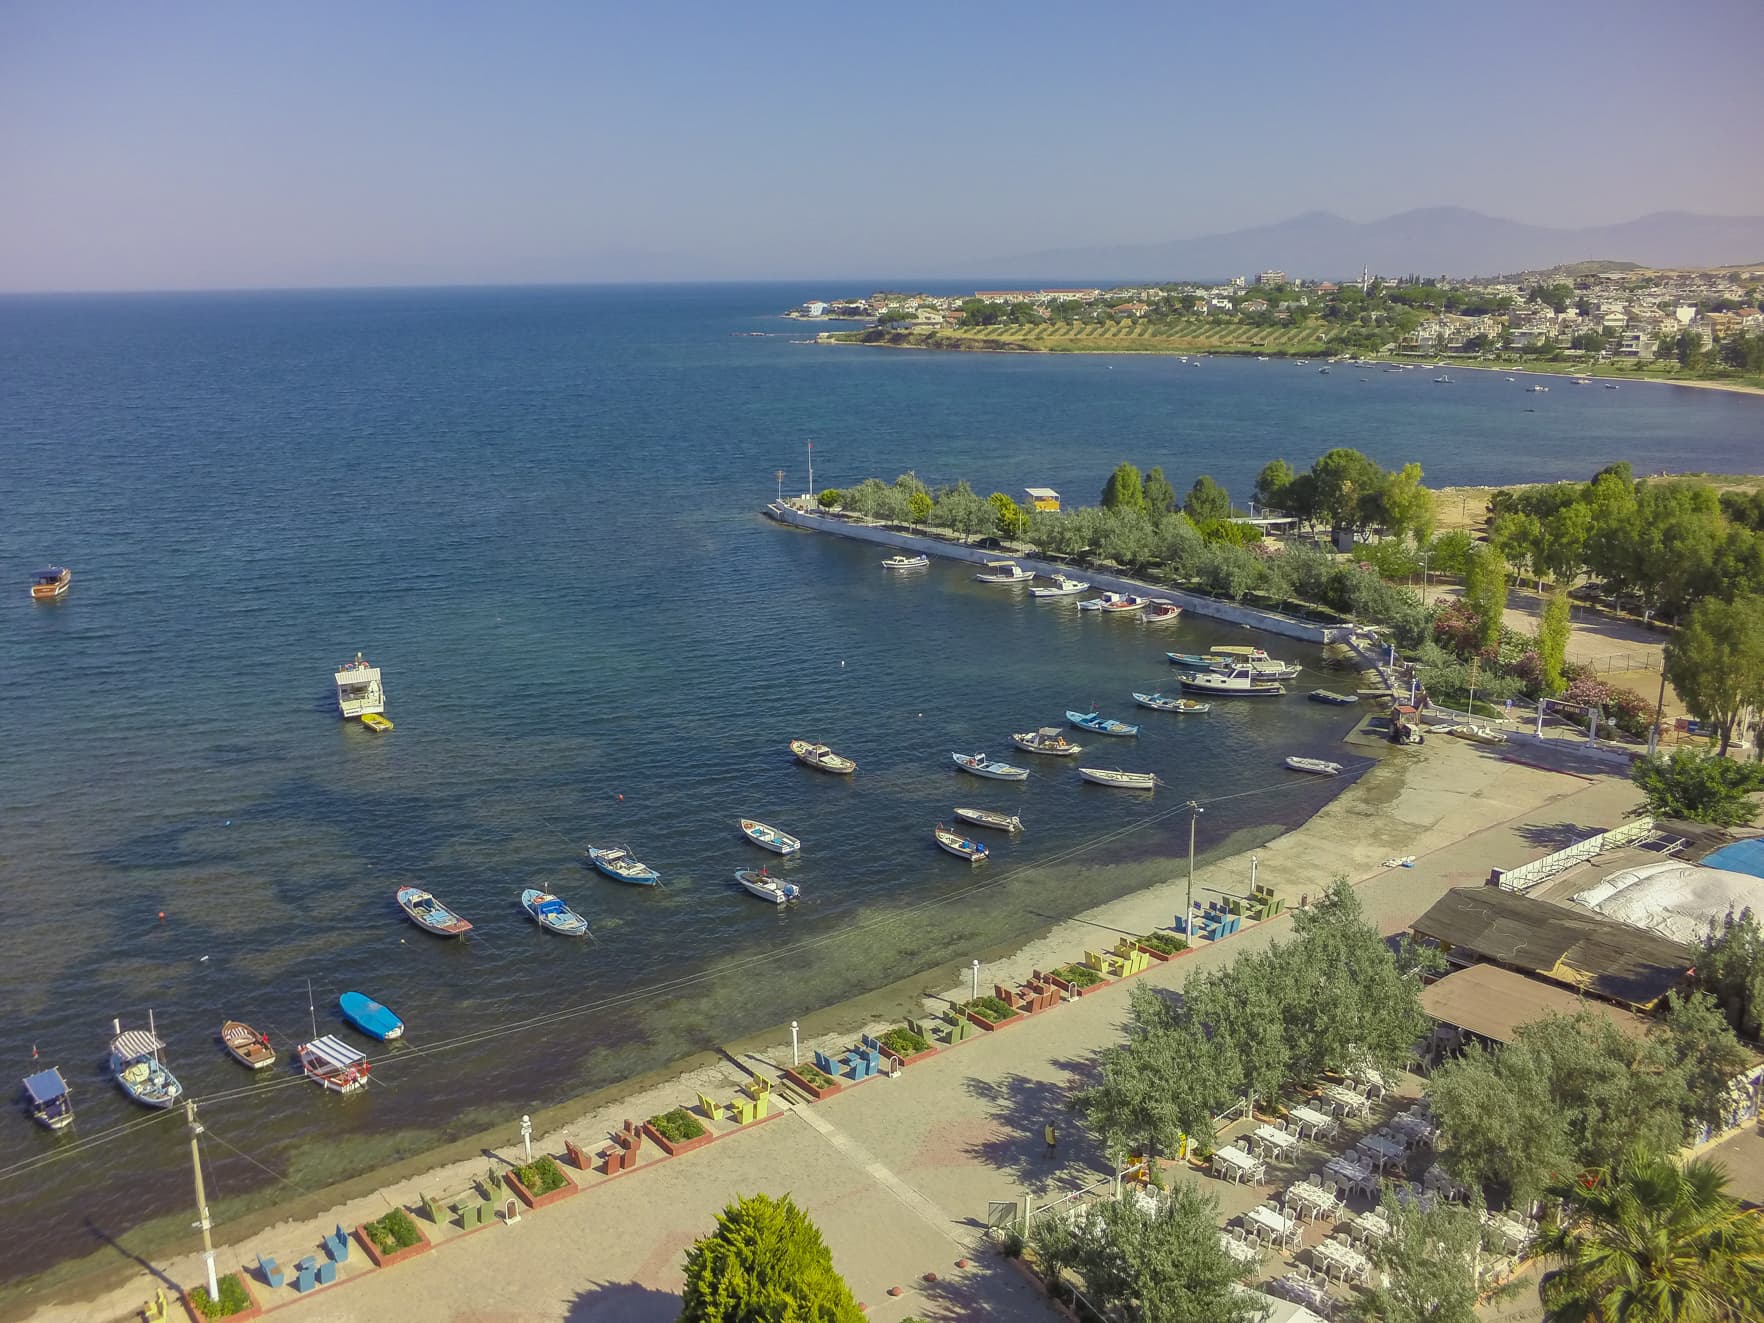 Мавишехир - Дидим, описание курорта в Турции, пляжи, отели, достопримечательности